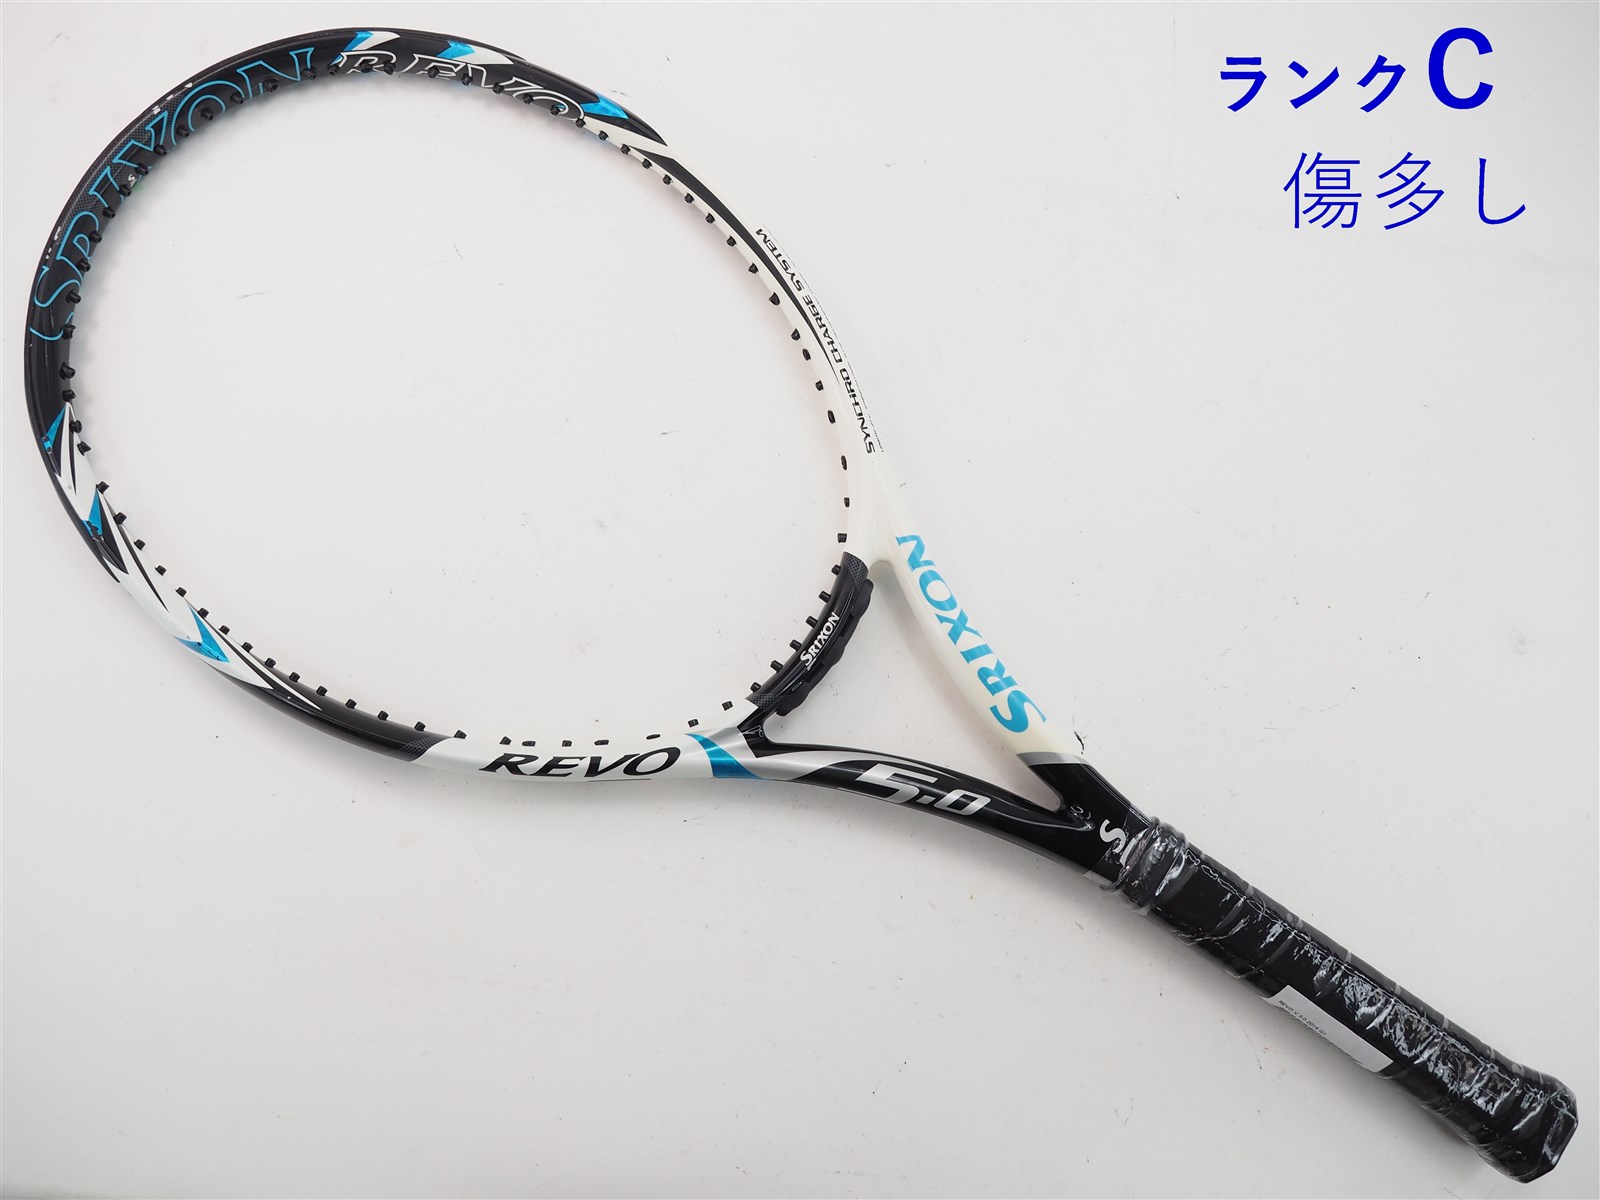 102平方インチ長さテニスラケット スリクソン レヴォ ブイ 5.0 2014年モデル (G2)SRIXON REVO V 5.0 2014